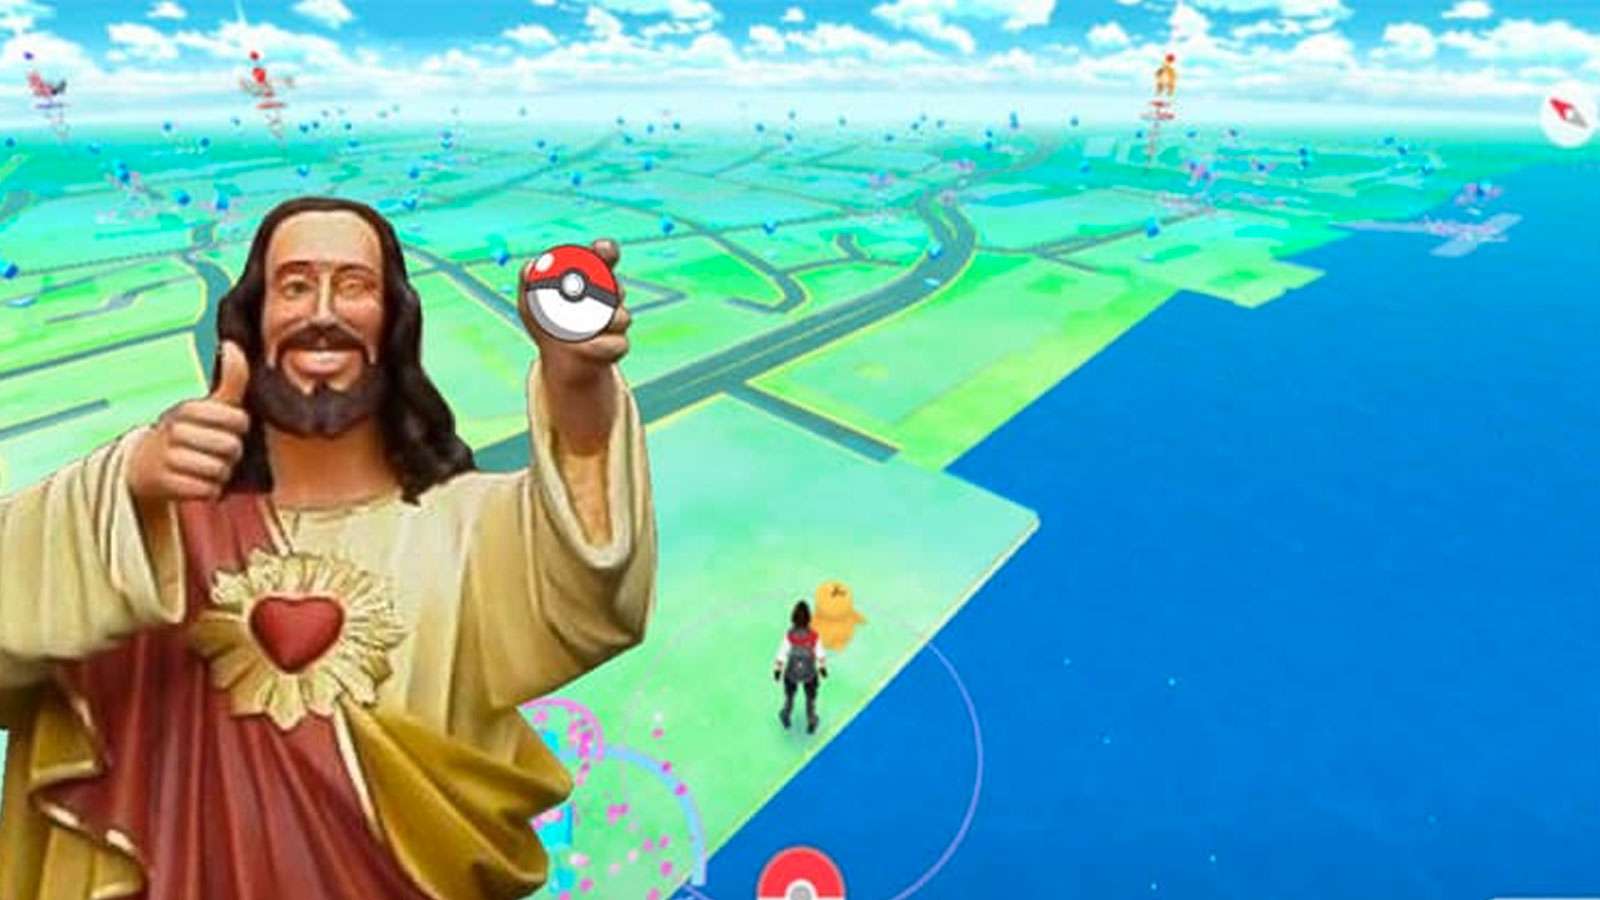 Une image de Jésus devant Pokémon Go